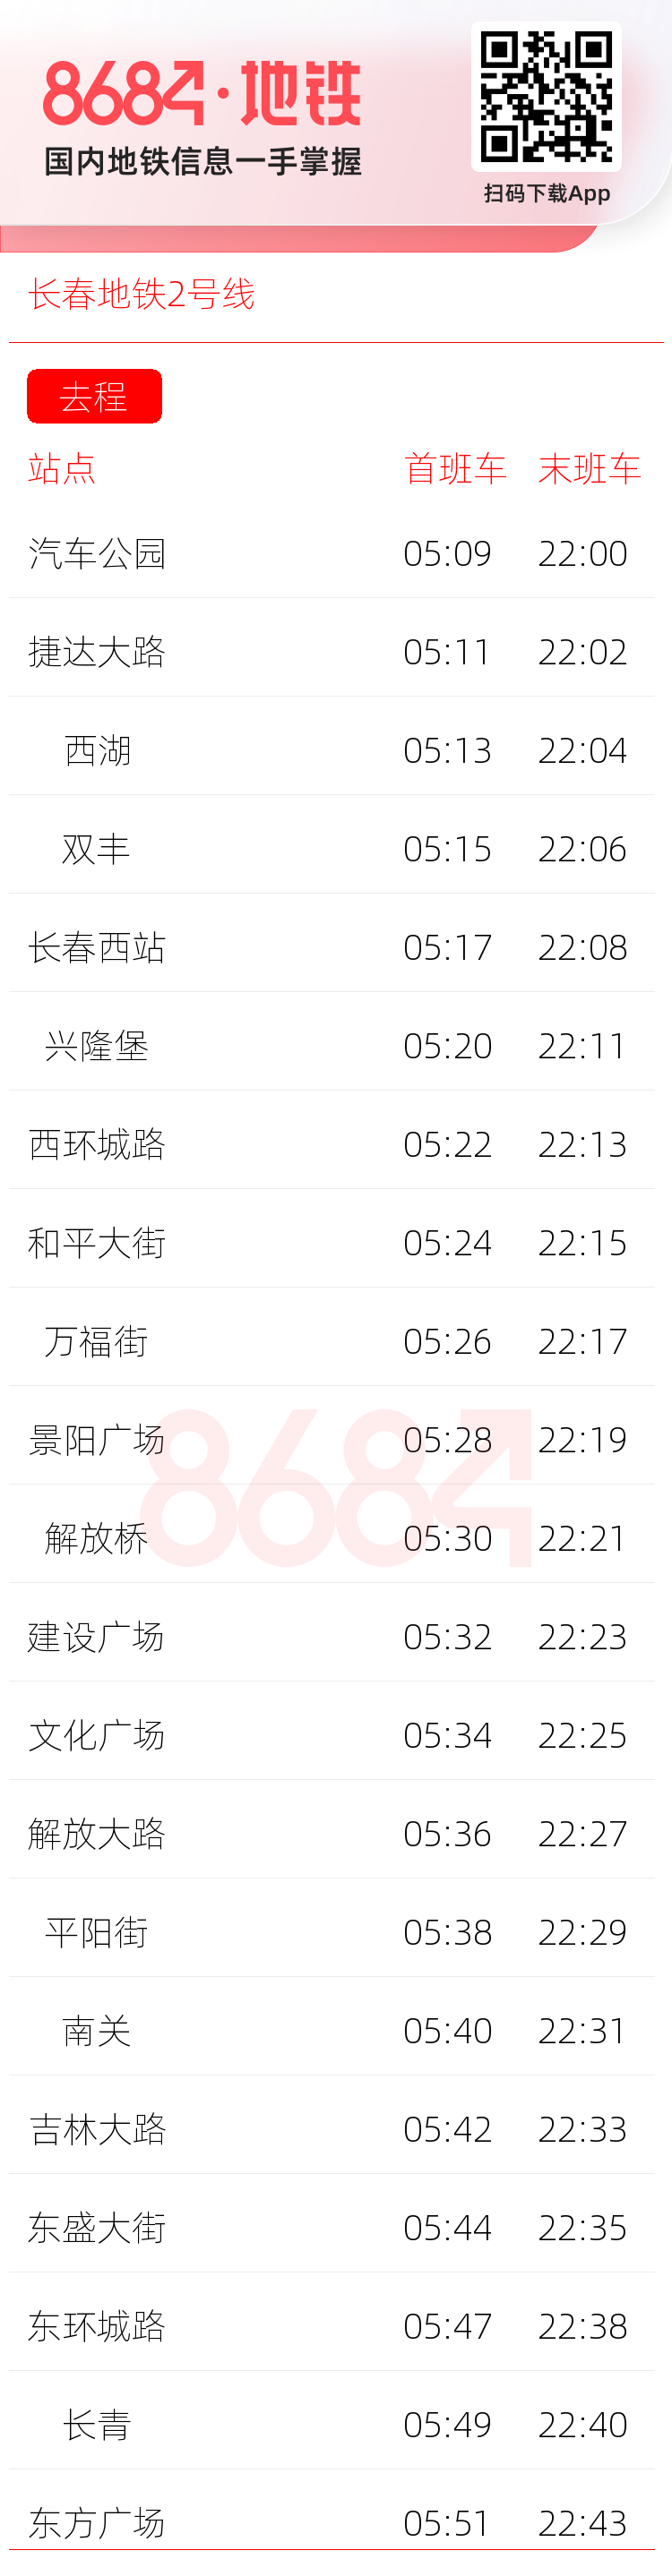 长春地铁2号线运营时间表